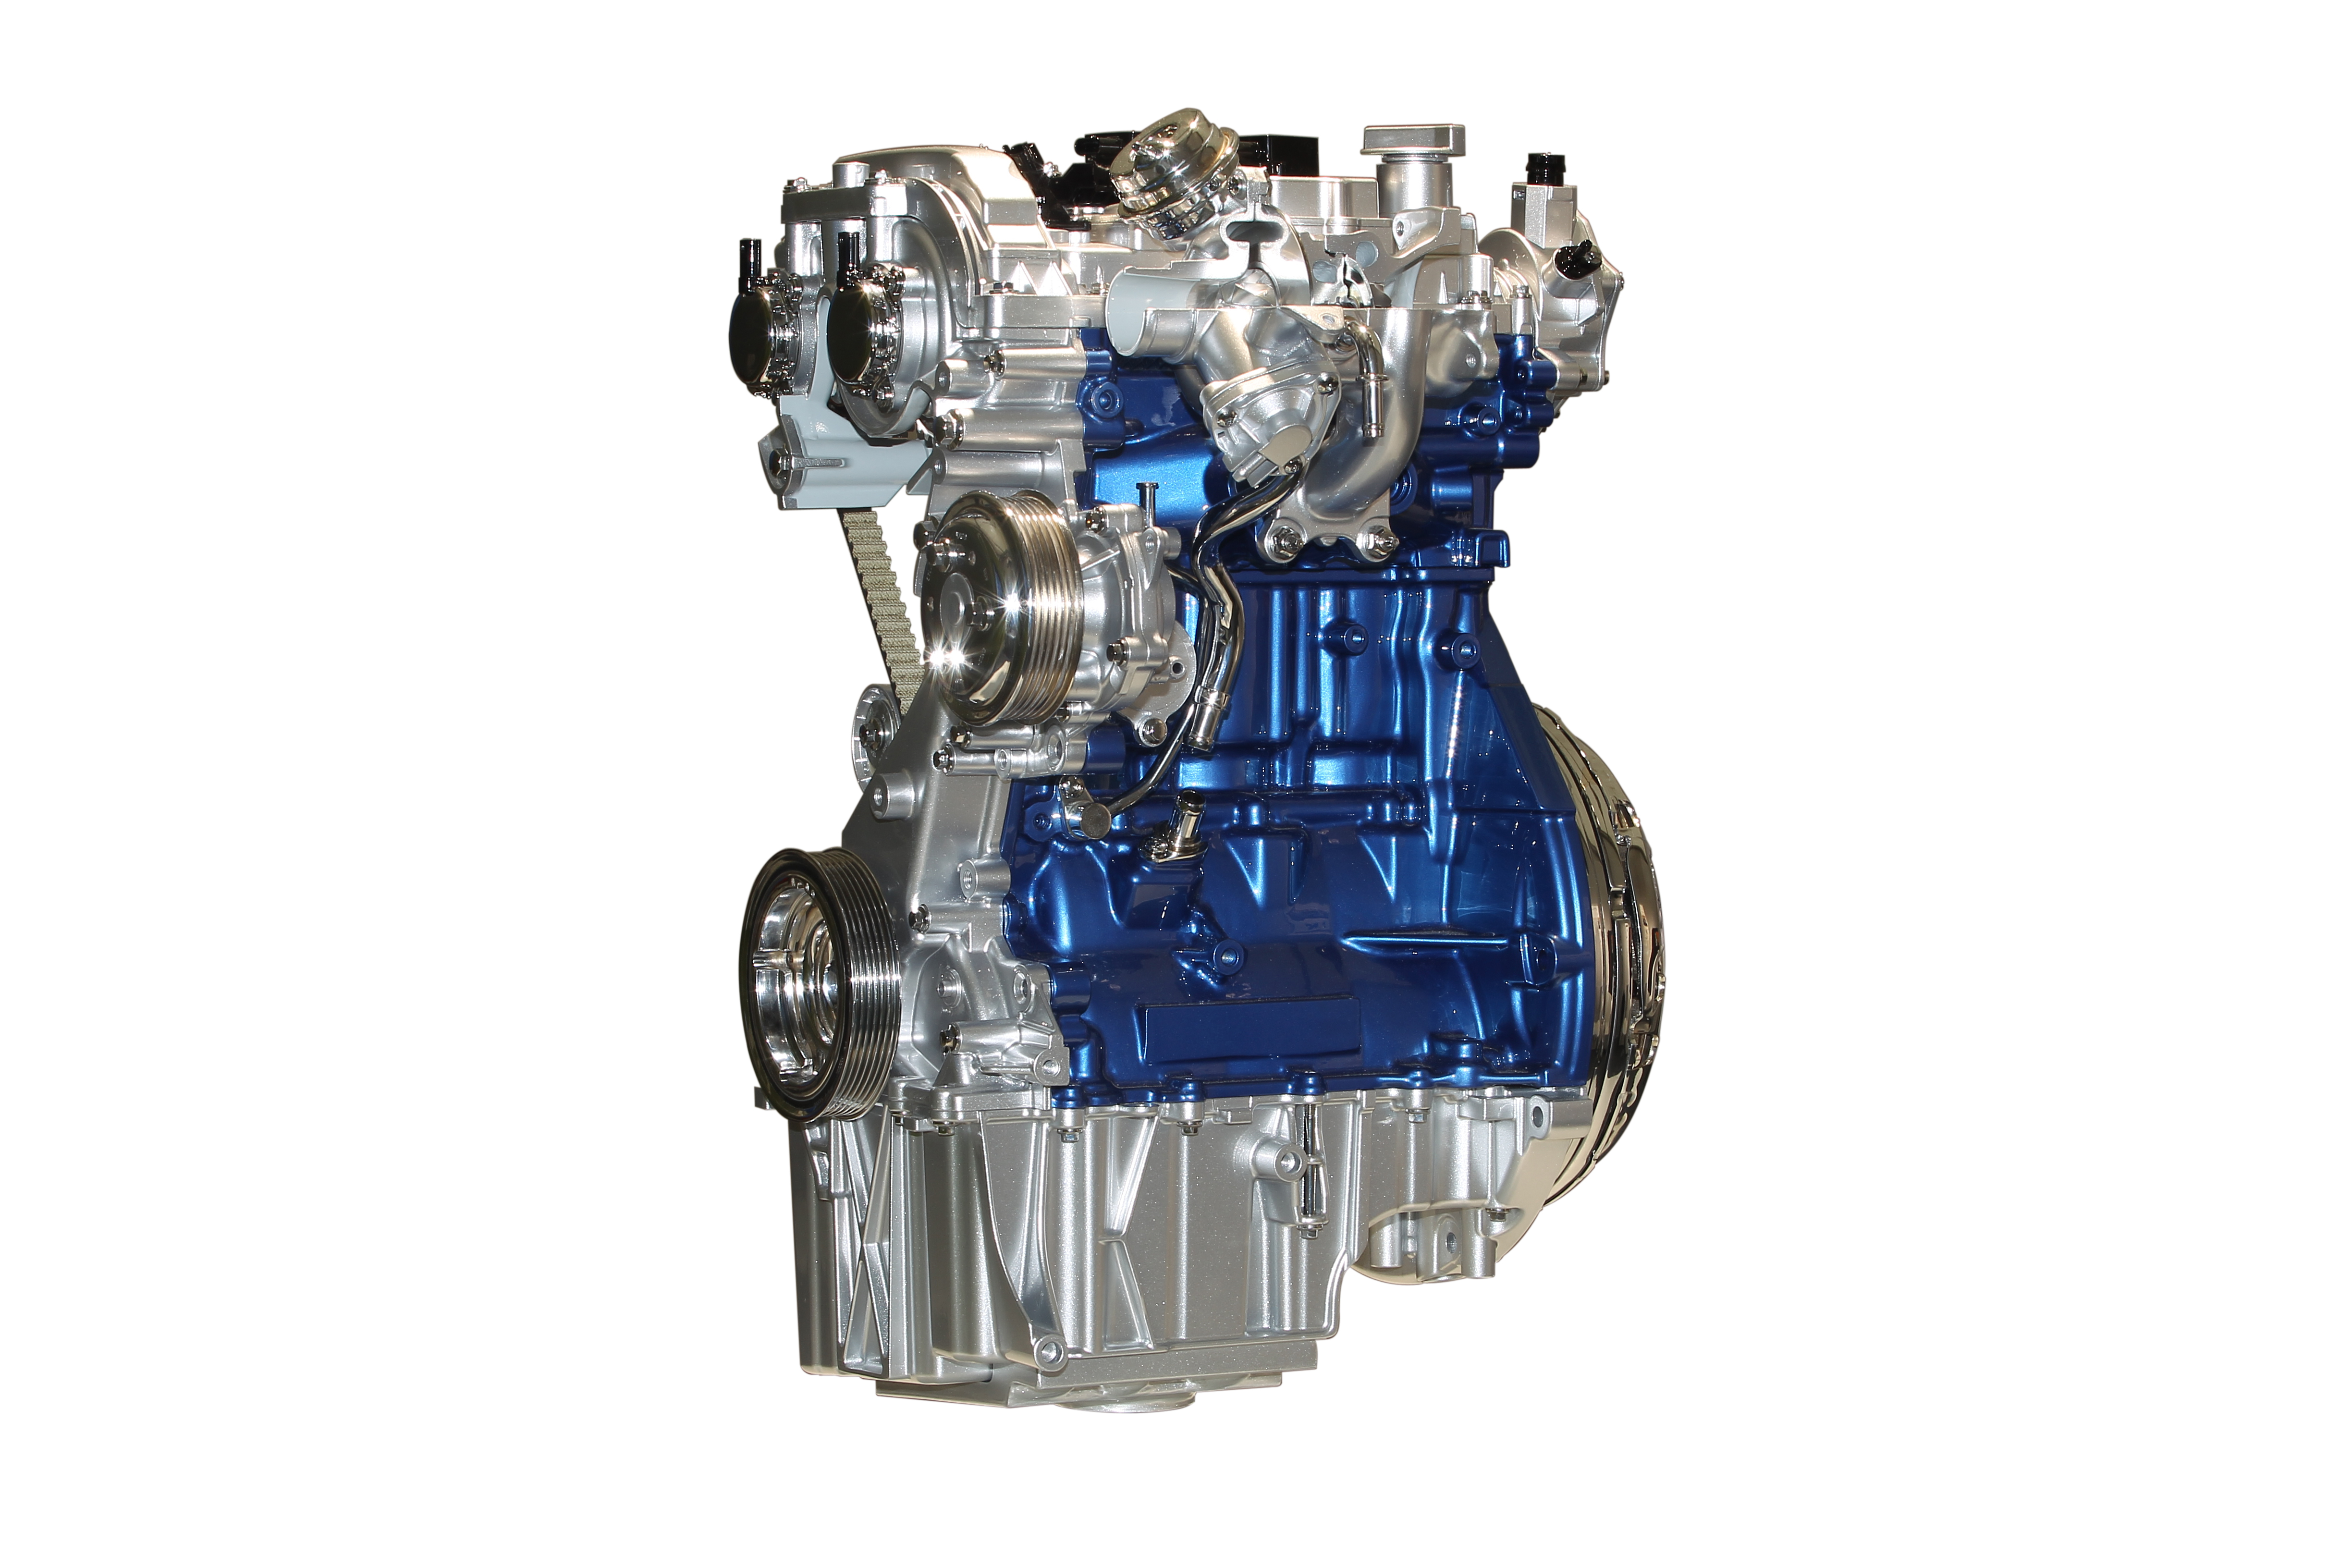 Fordov EcoBoost ostaje najbolji mali motor na svetu